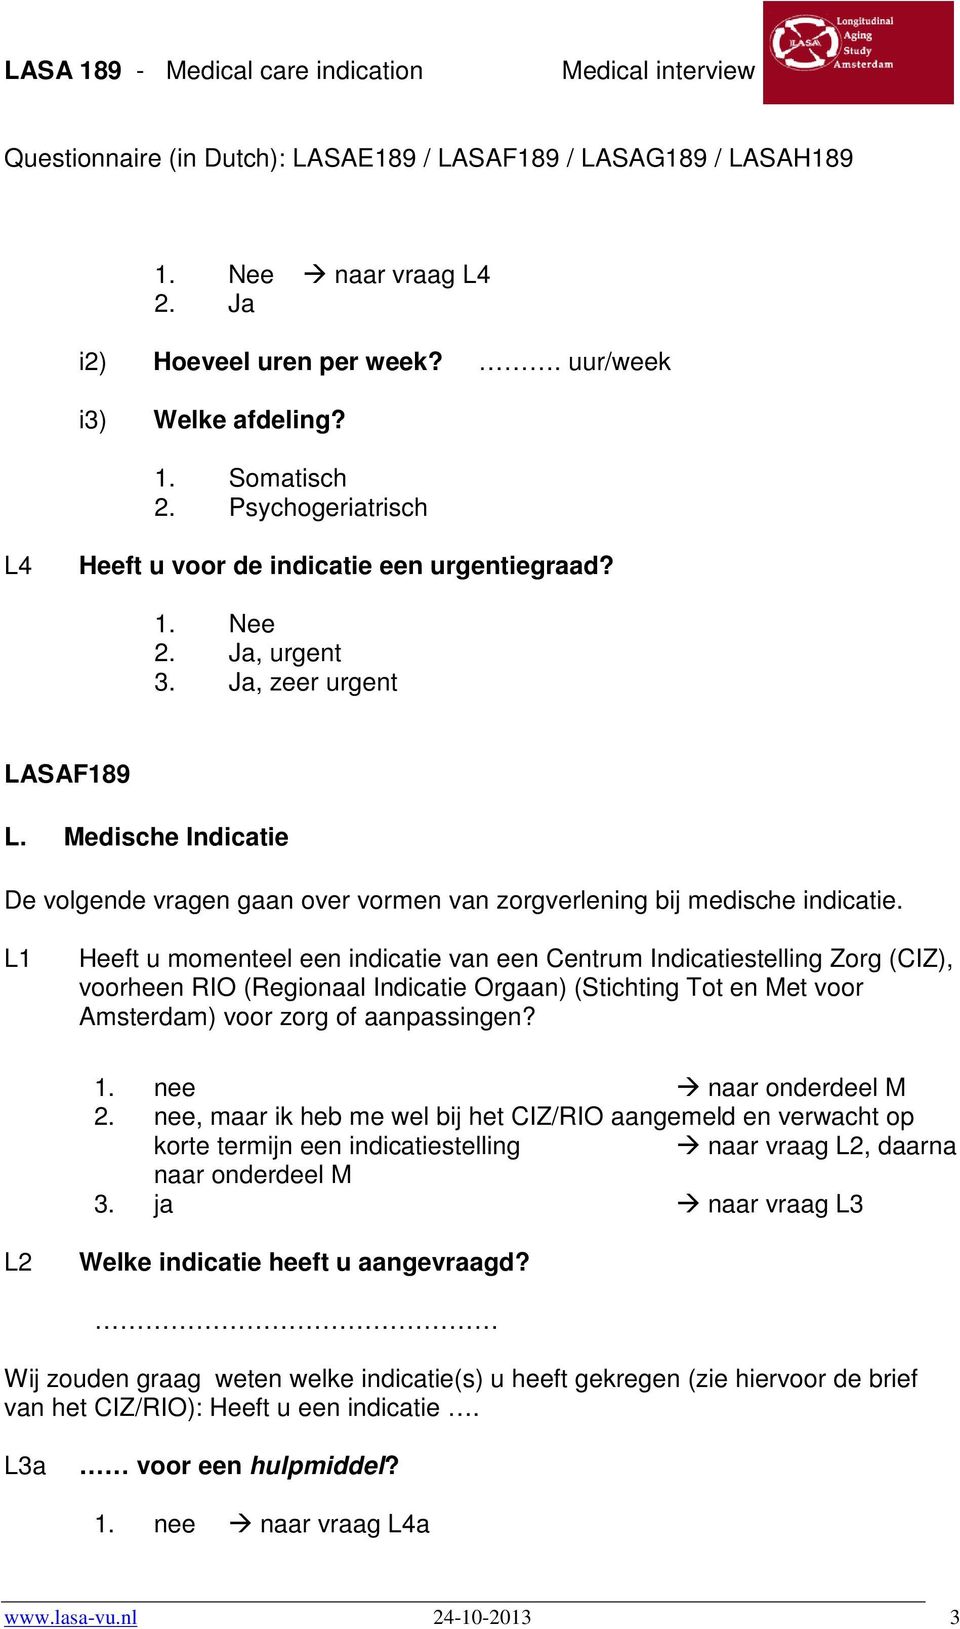 L1 Heeft u momenteel een indicatie van een Centrum Indicatiestelling Zorg (CIZ), voorheen RIO (Regionaal Indicatie Orgaan) (Stichting Tot en Met voor Amsterdam) voor zorg of aanpassingen? 1.